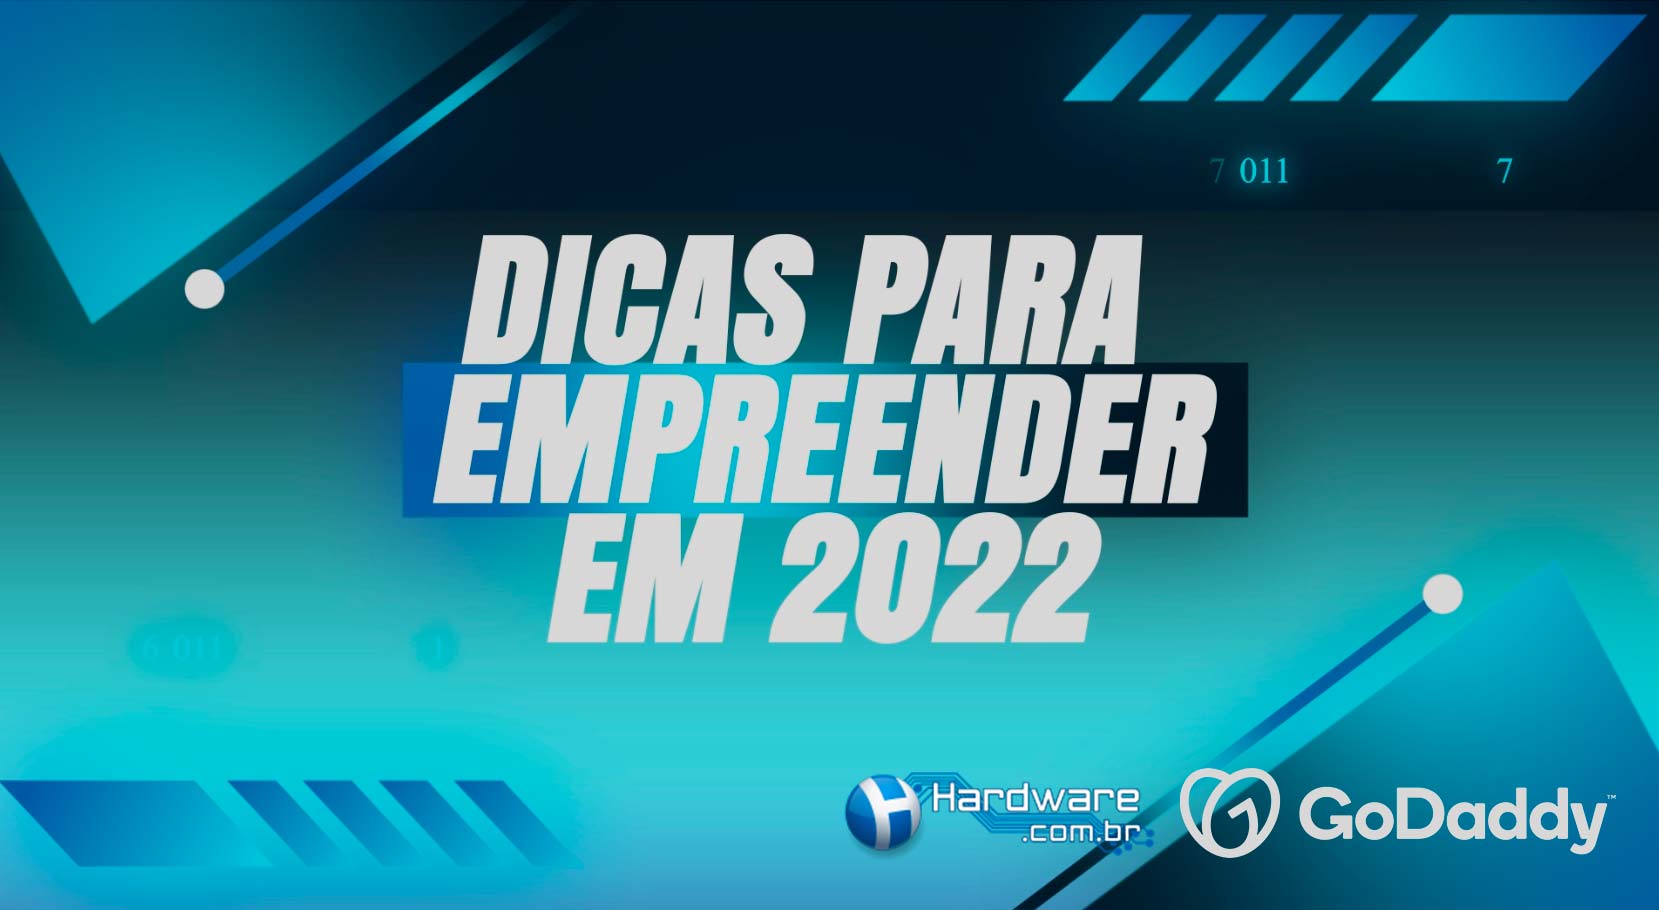 Tire seu negócio do papel: Dicas para empreender em 2022 [VÍDEO]